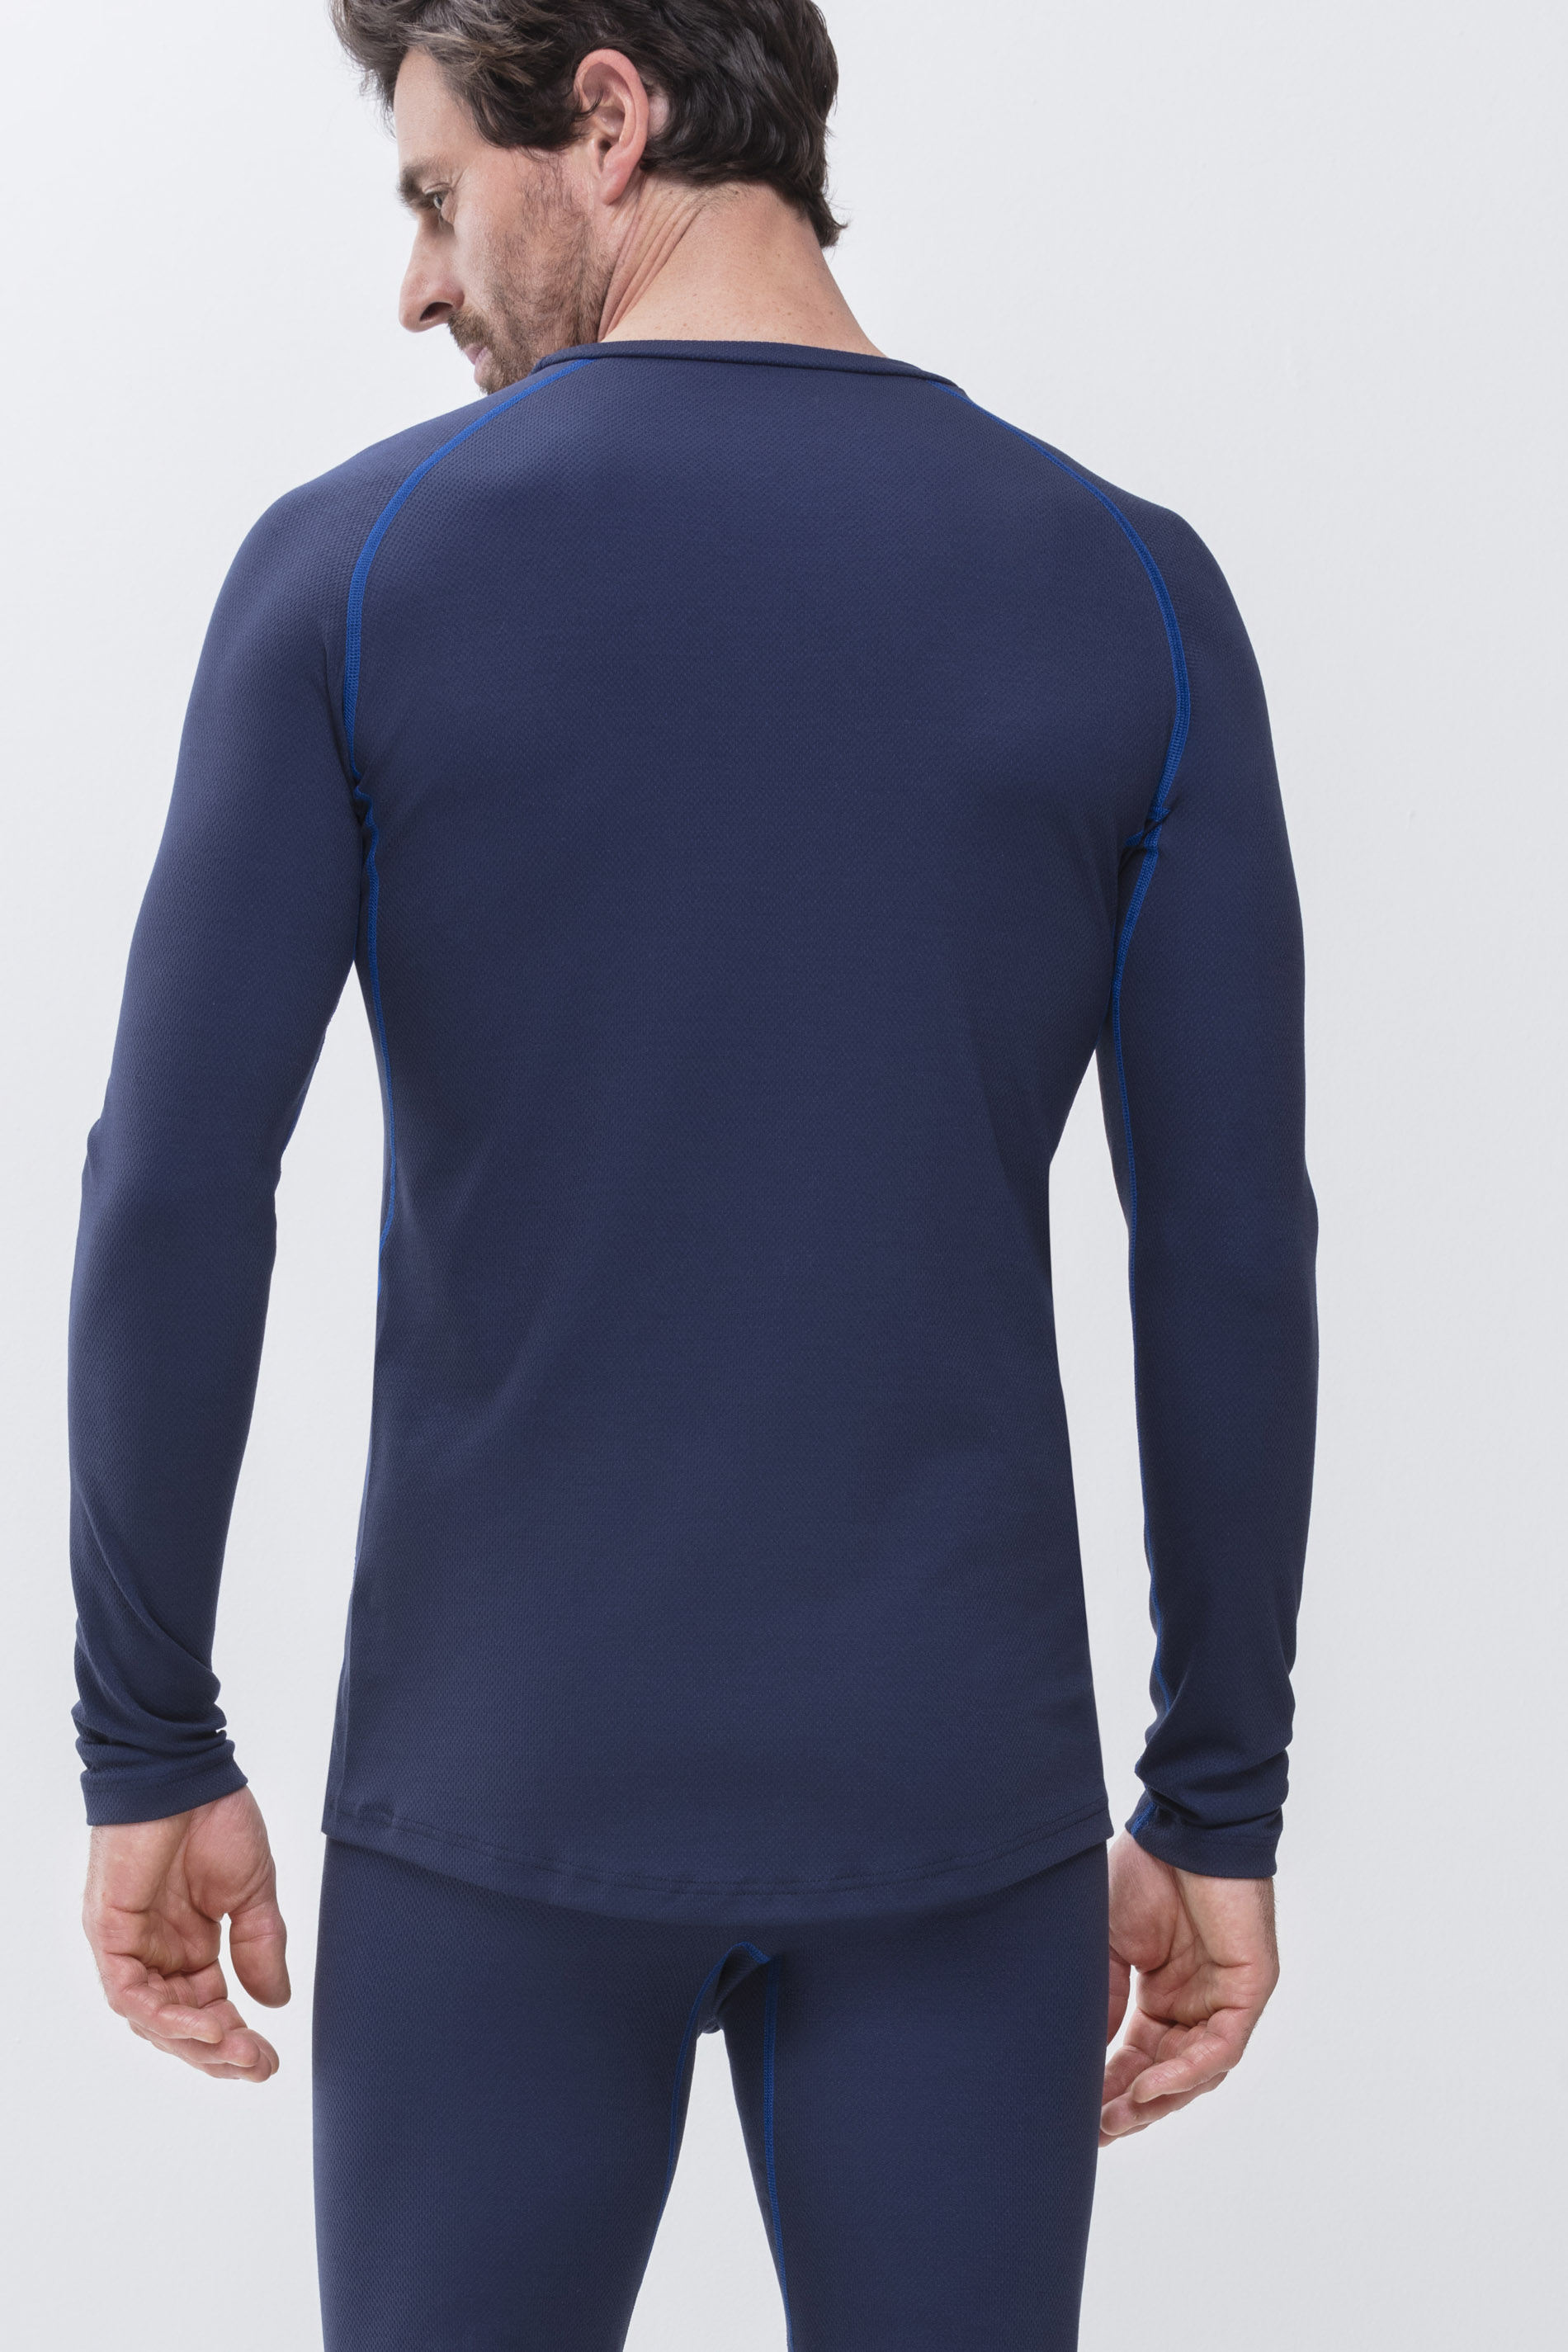 Long-Sleeved Shirt Yacht Blue High Performance Achteraanzicht | mey®